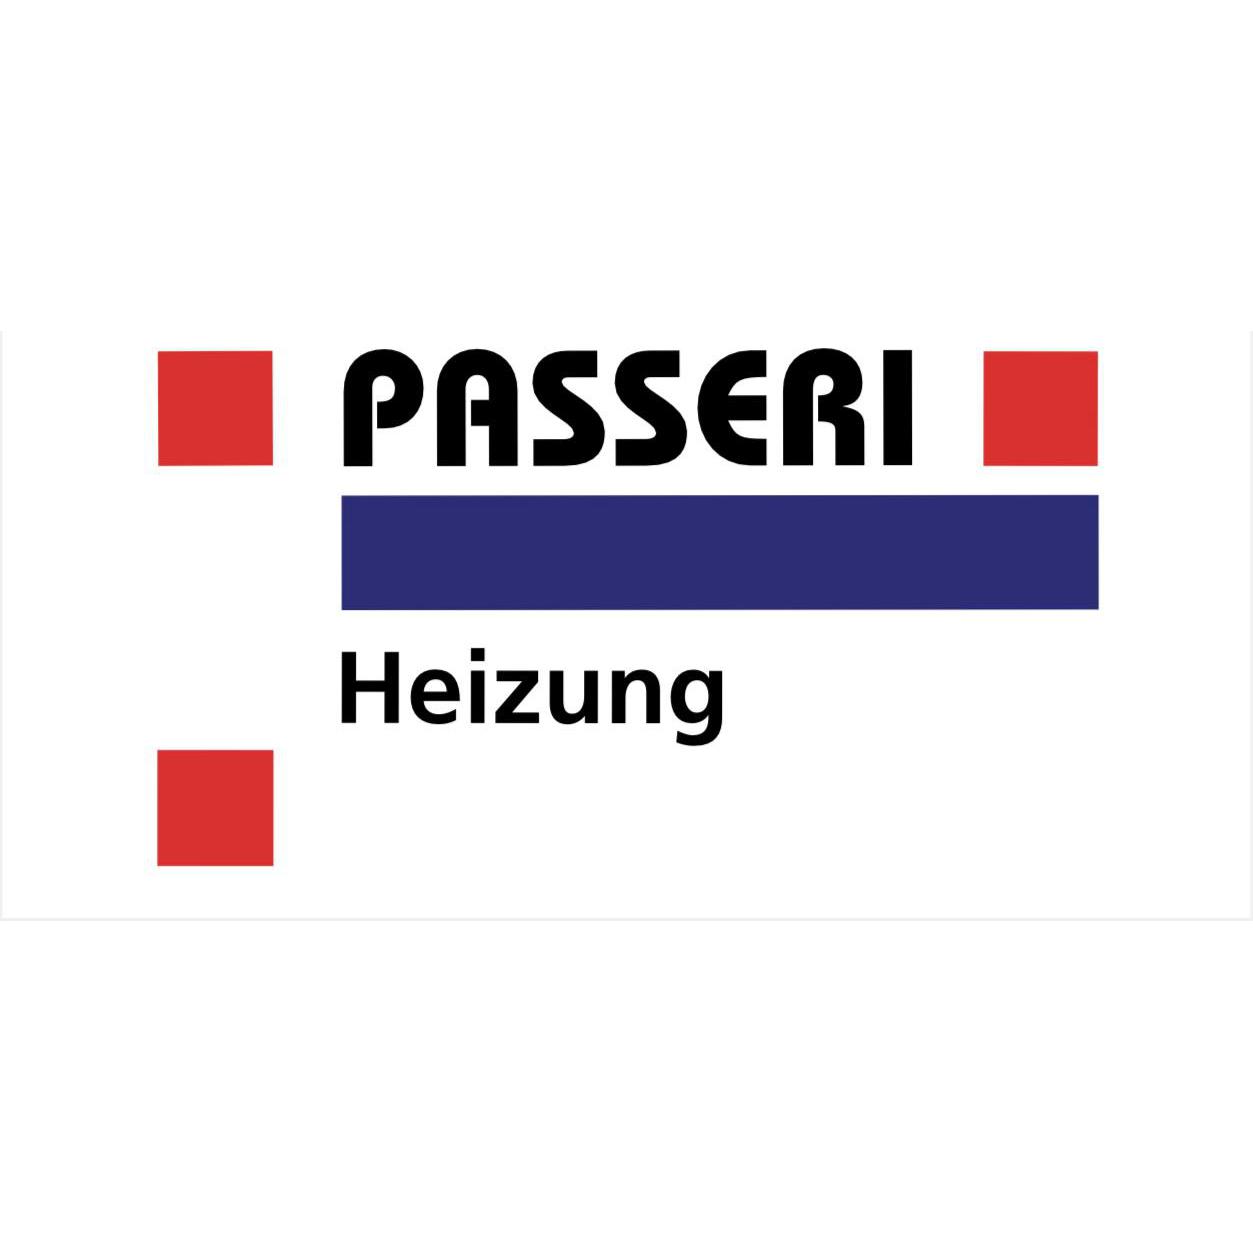 Passeri Heizung Logo